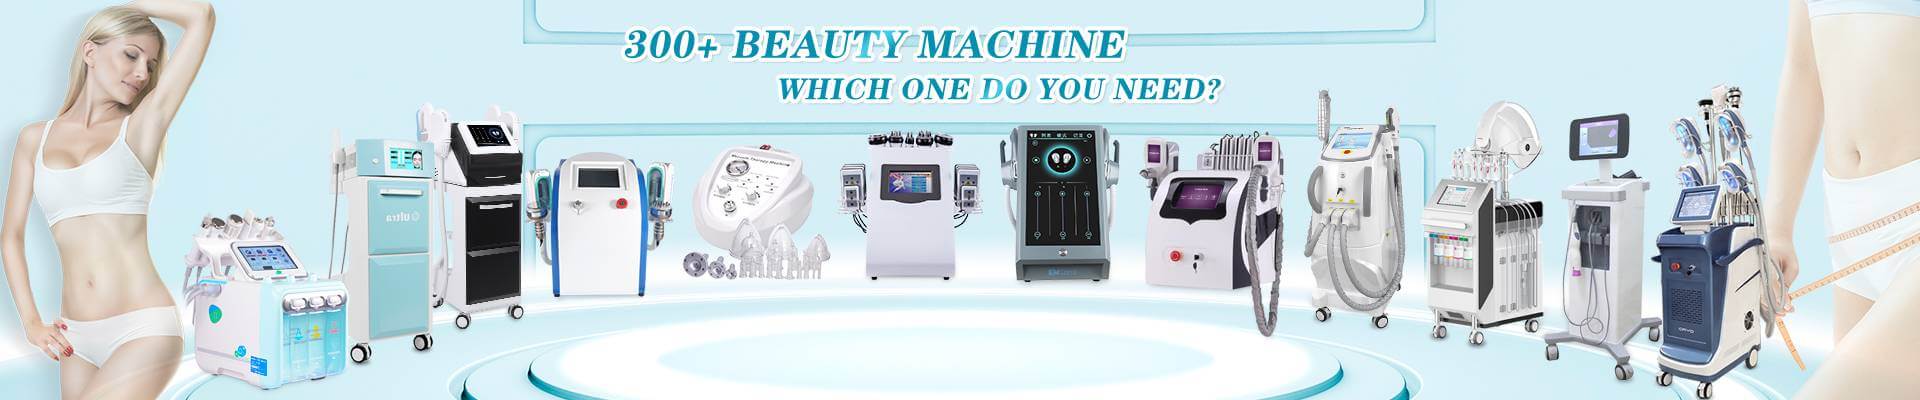 beauty equipment manufacturer